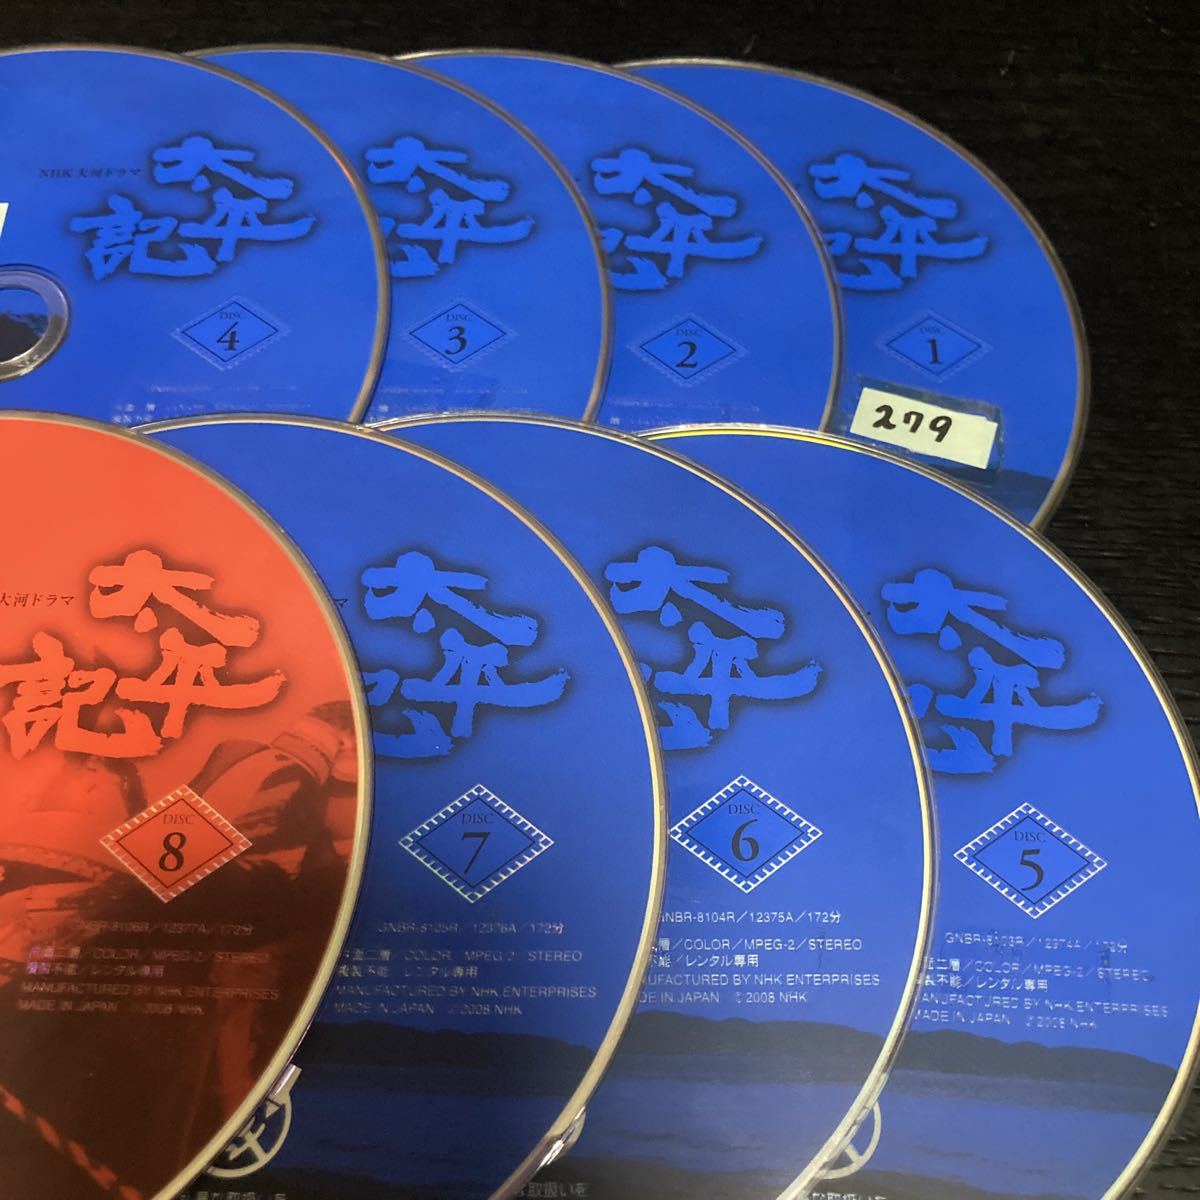 最高の品質の NHK大河ドラマ 太平記 全13巻 DVD レンタル落ち 